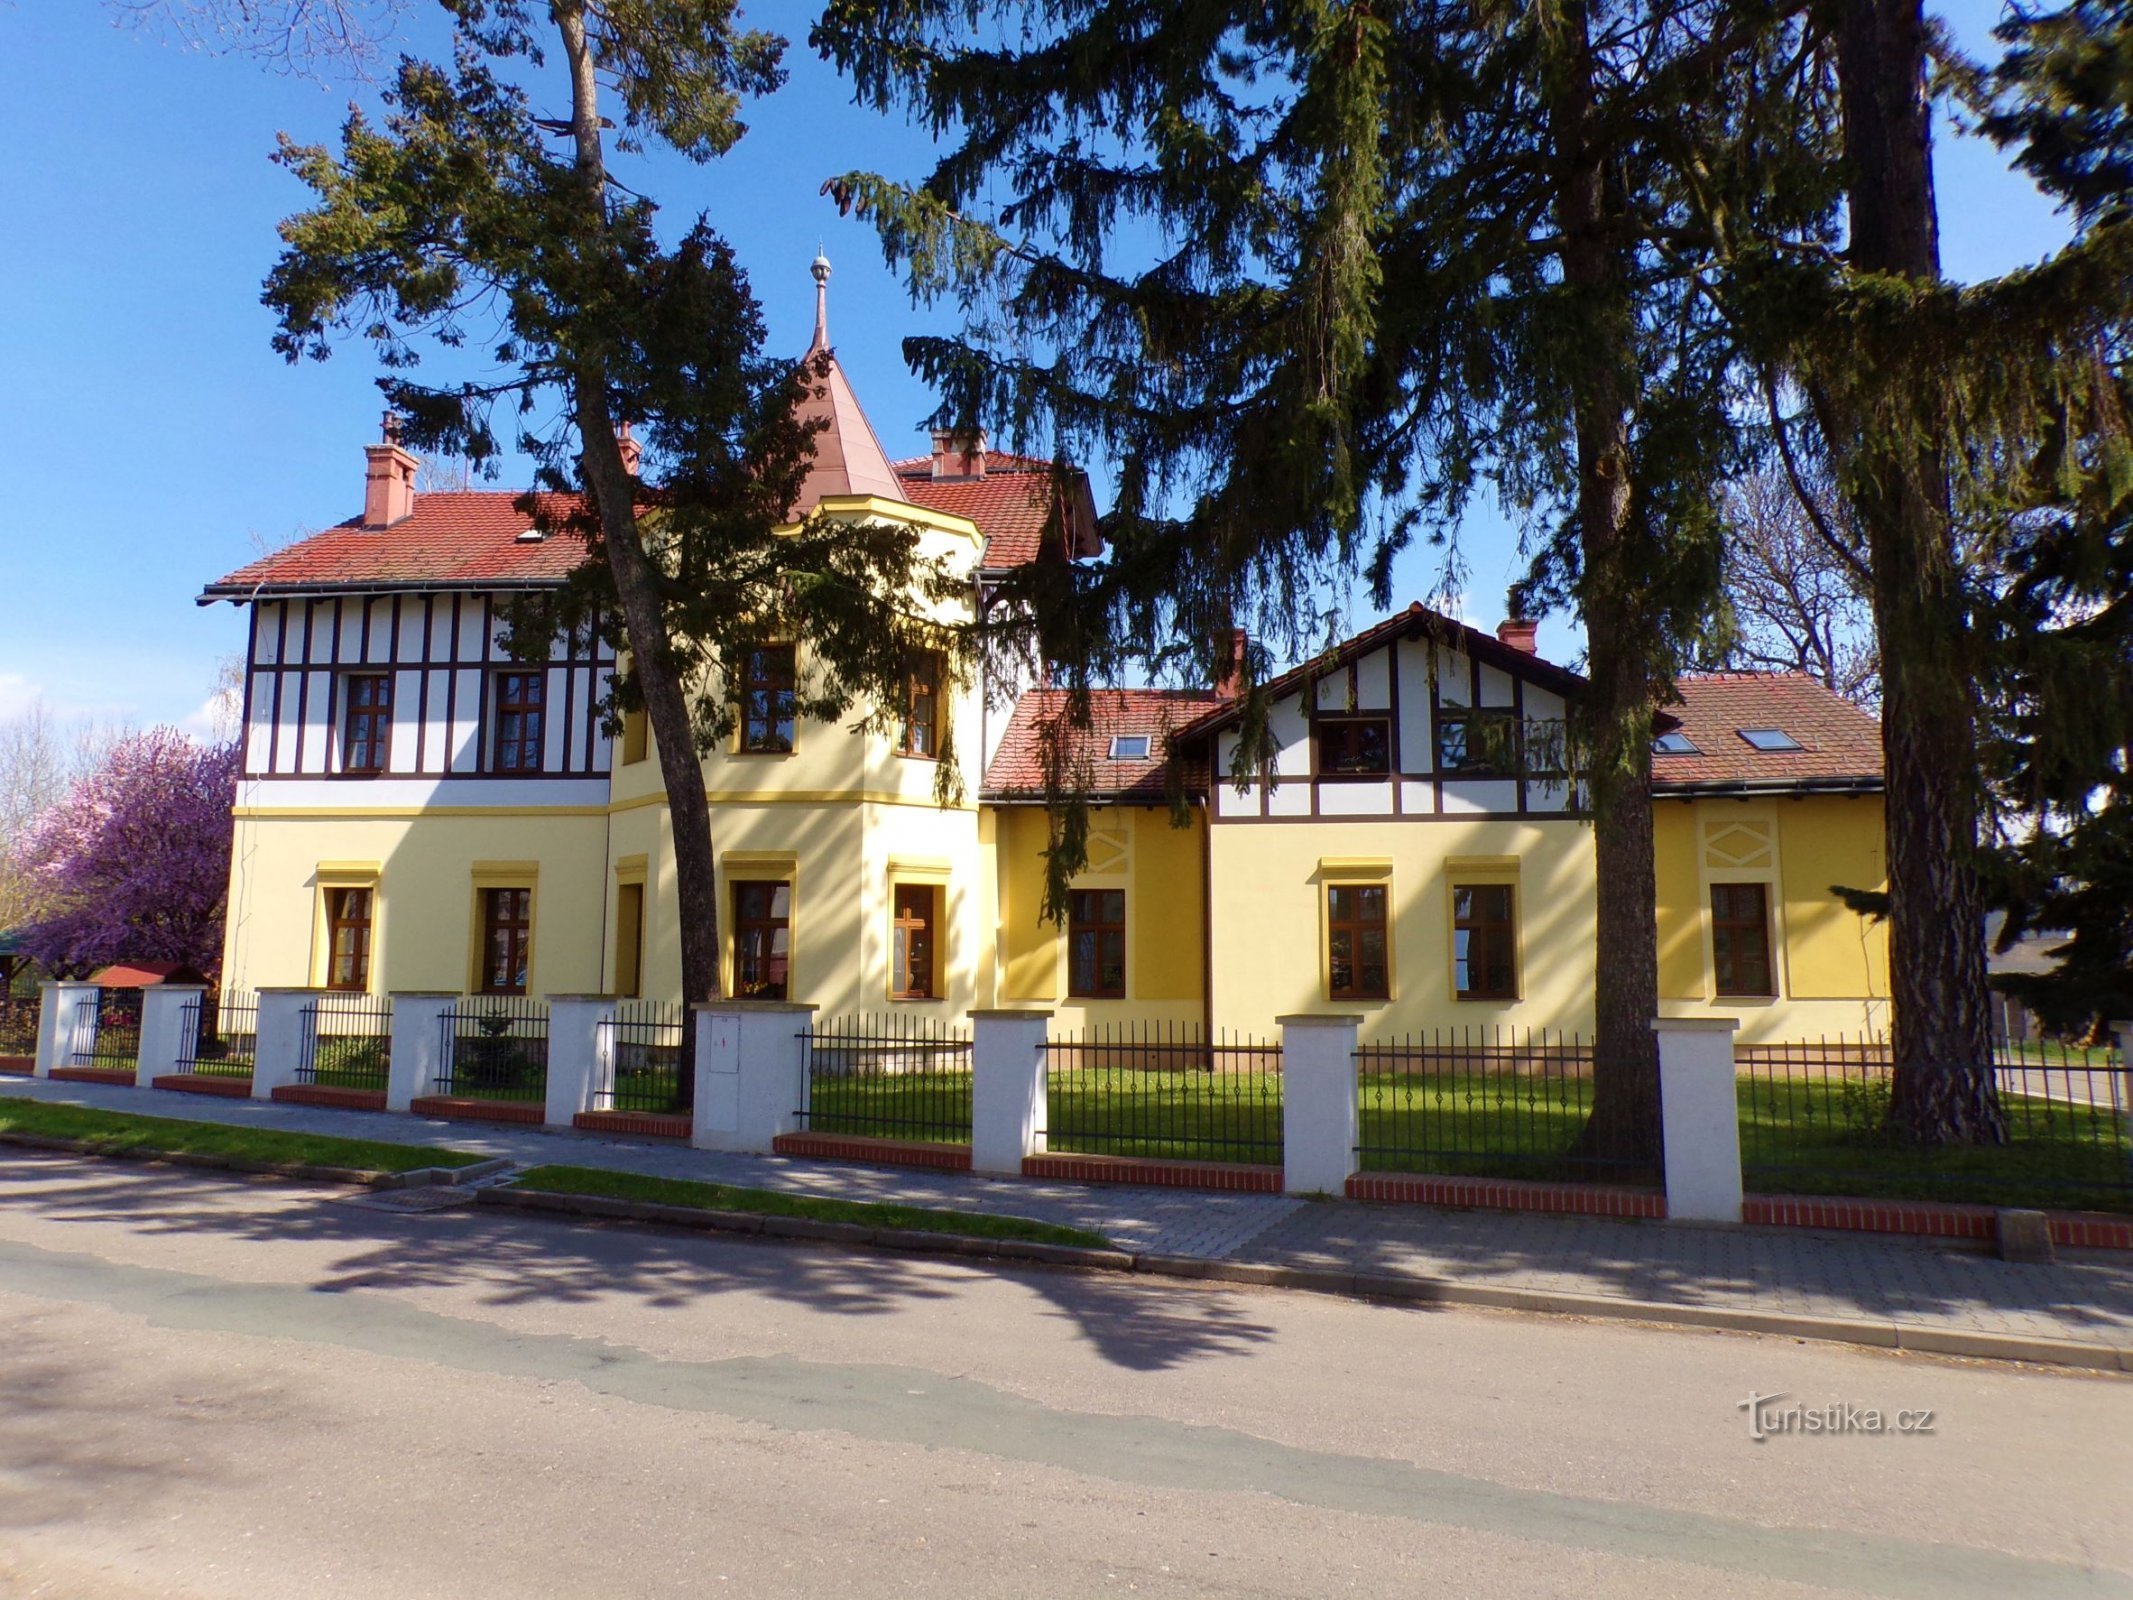 Villa de Malmann nº 63 (Skřivany, 30.4.2021/XNUMX/XNUMX)